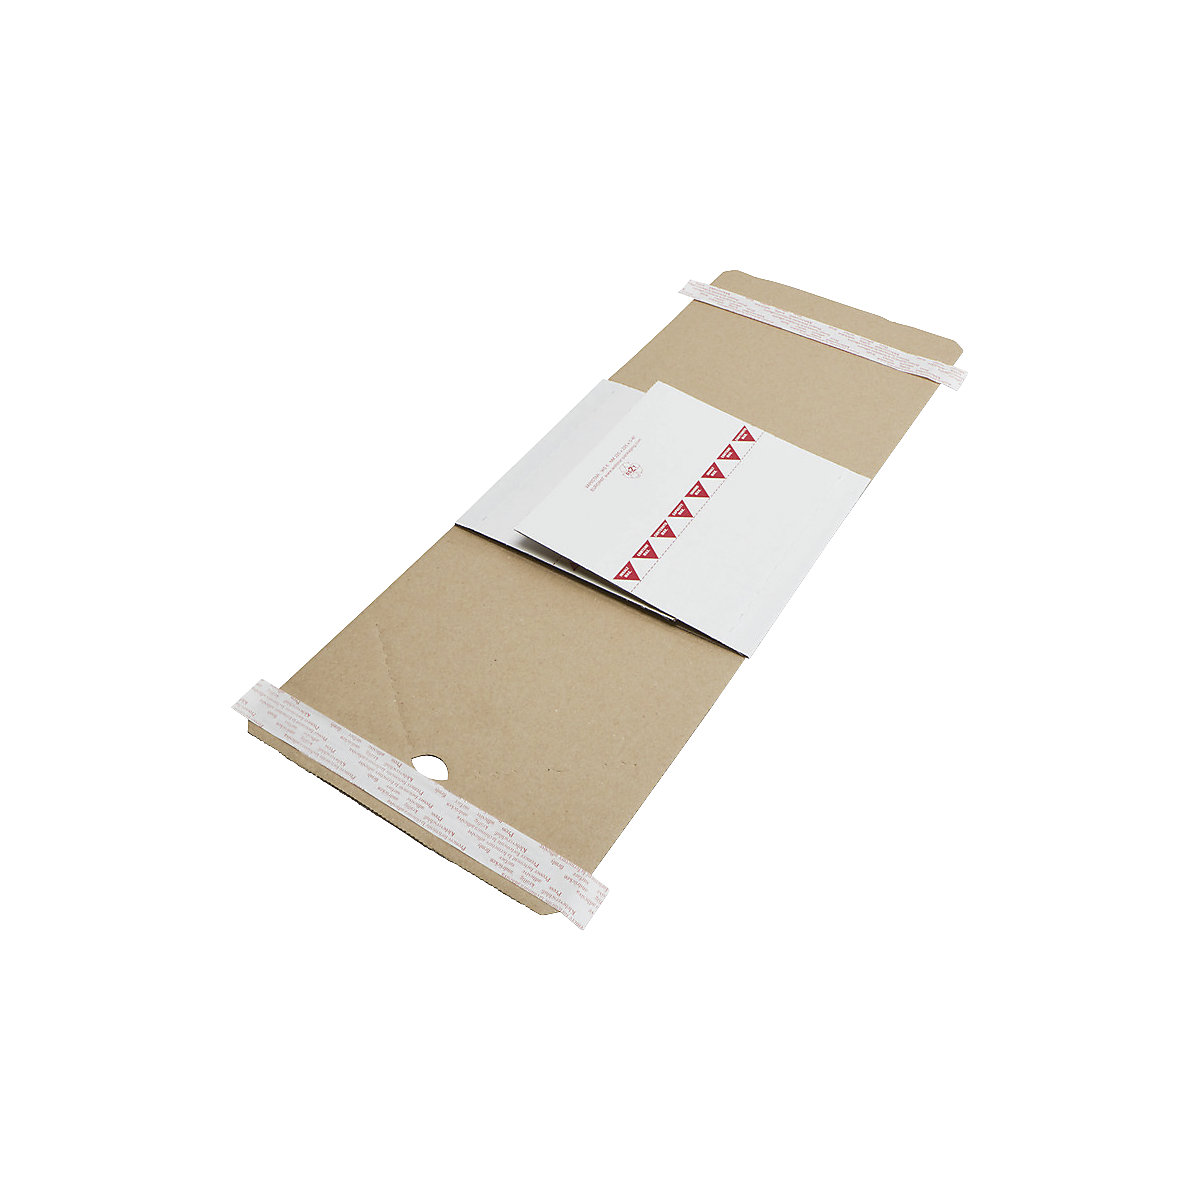 Imballaggio per libri Varistar – flow, chiusura autoadesiva doppia, lungh. x largh. 225 x 225 mm, a partire da 100 pz.-2